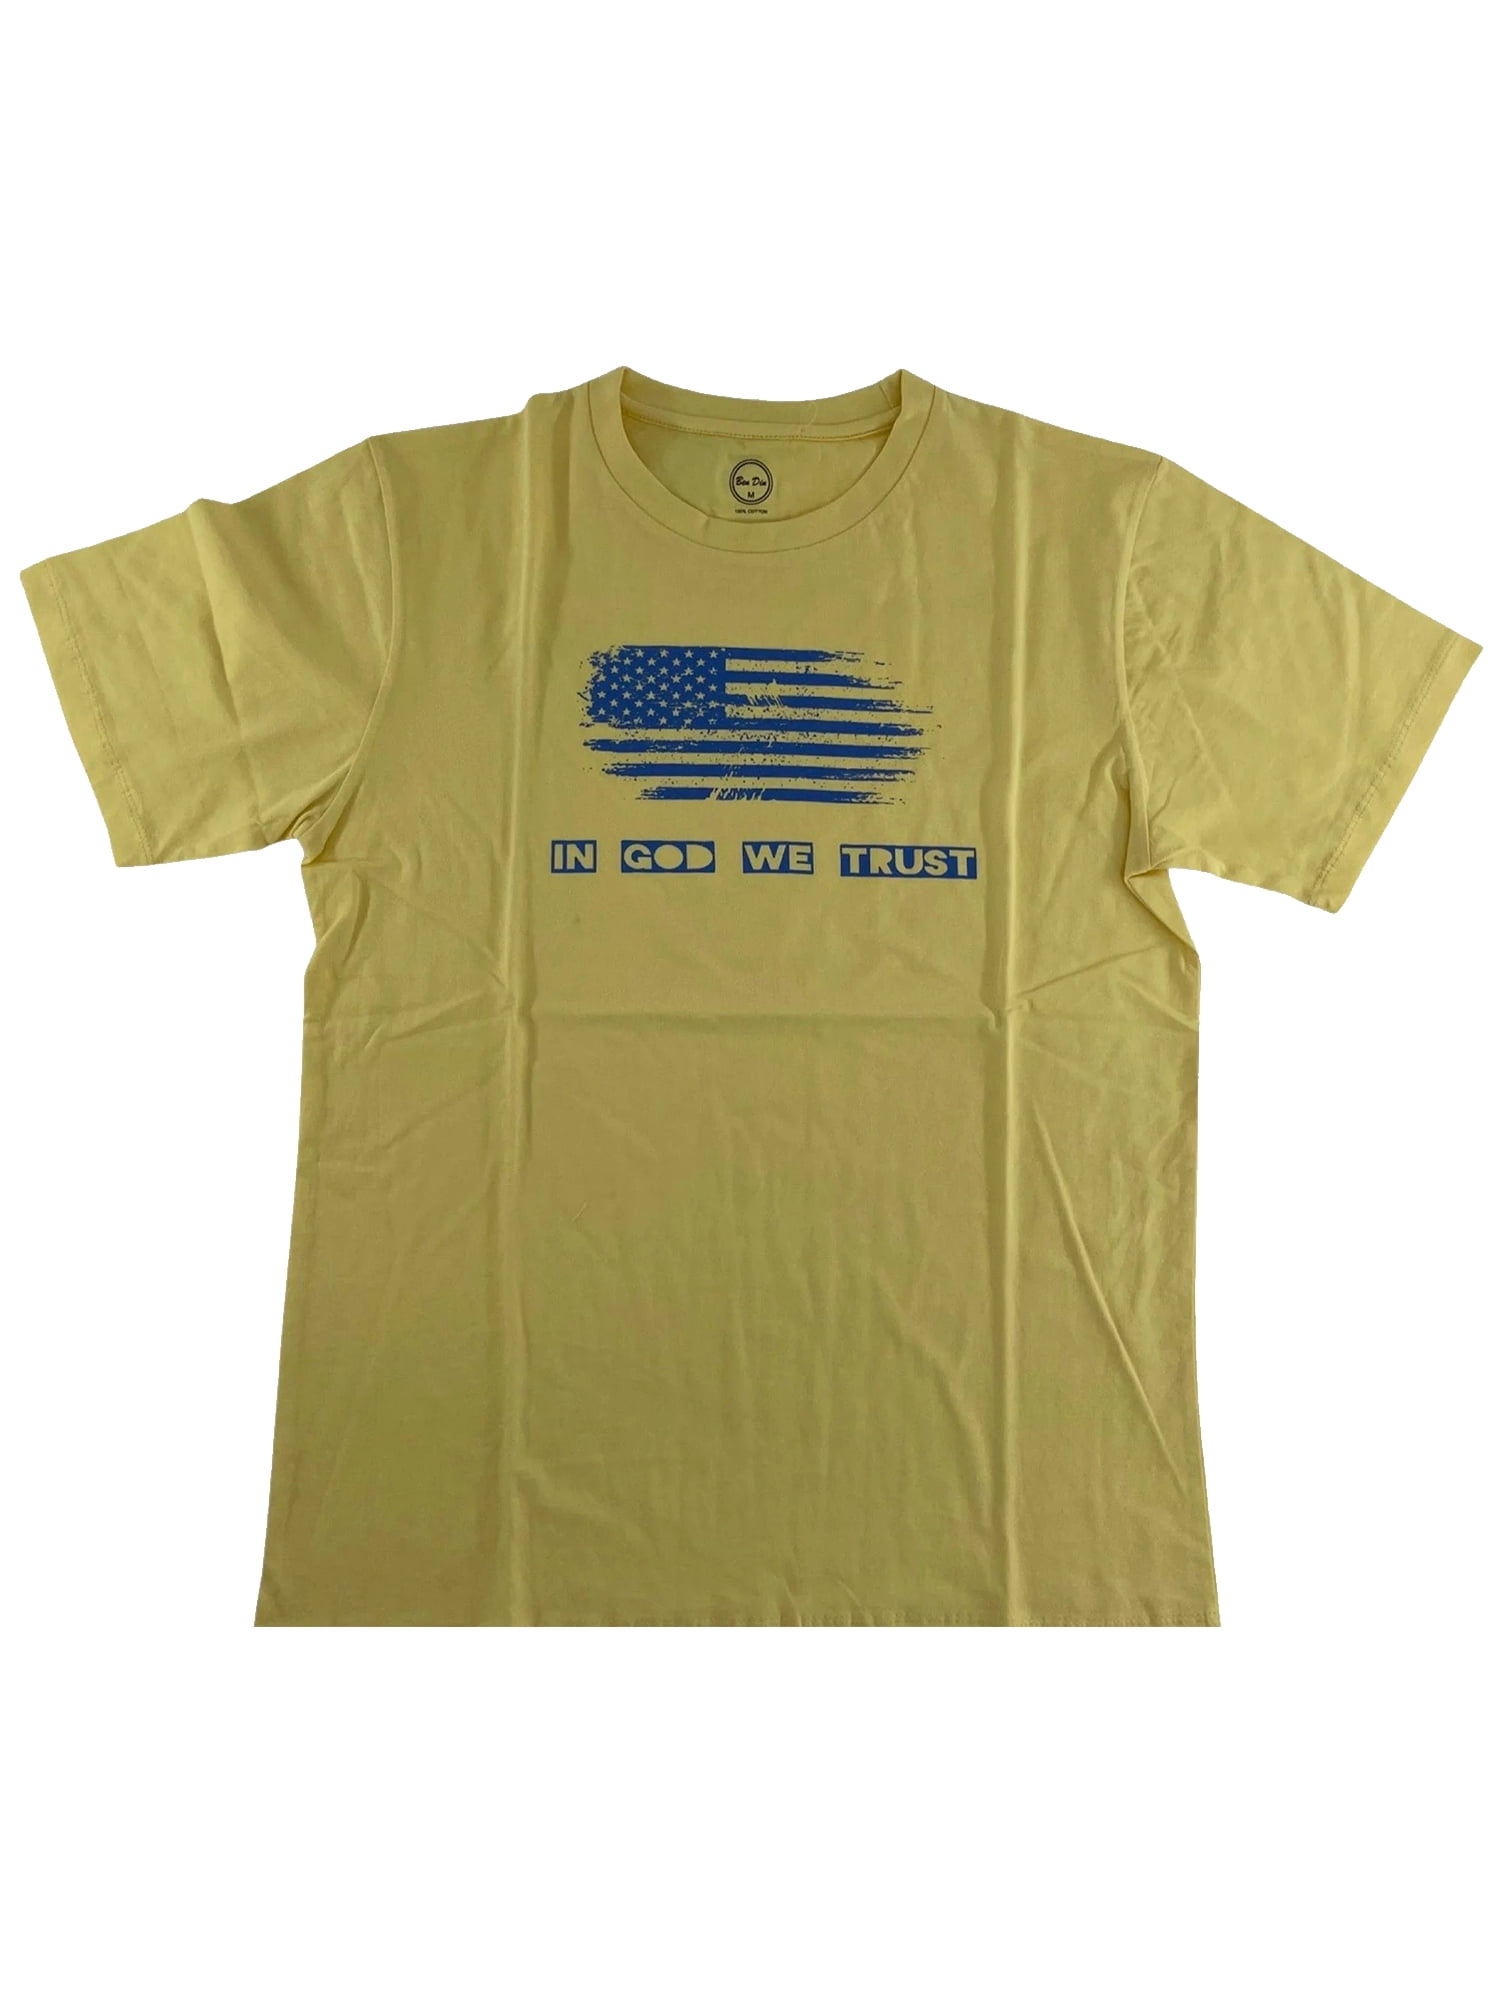 Ben Din Men’s Crewneck Short Sleeve T-Shirt, Casual Cotton Summer T ...